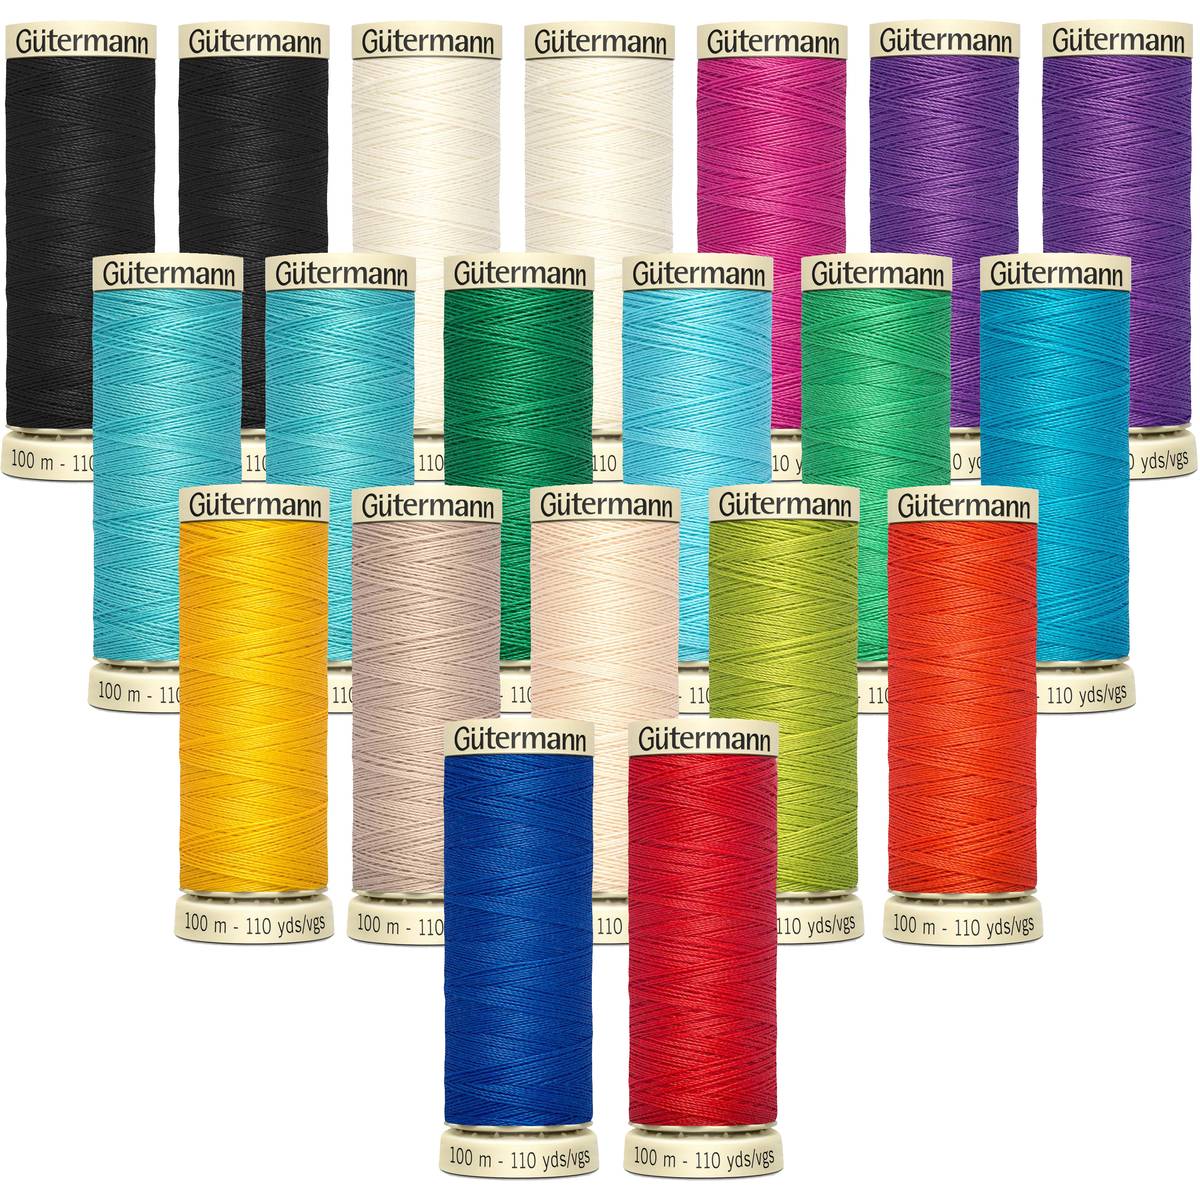 Colour 188 Gutermann Sew All Thread All Purpose Sewing Thread 100m Reels 1/3/5 